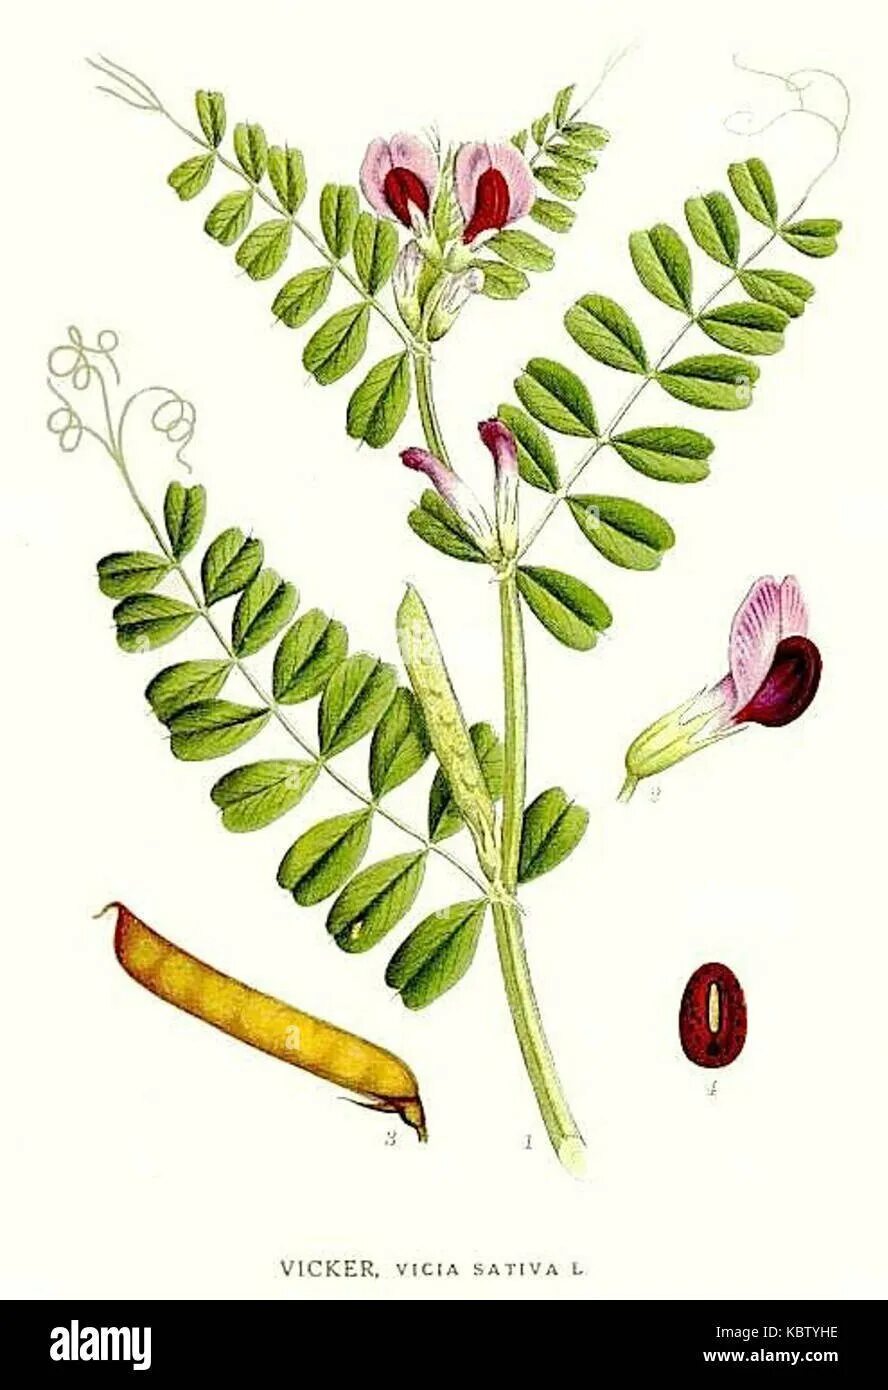 Plant wiki. Семена Вики мышиный горошек. Вика растение бобовых. Вика Яровая растение. Вика посевная (Vicia Sativa l.)семя.